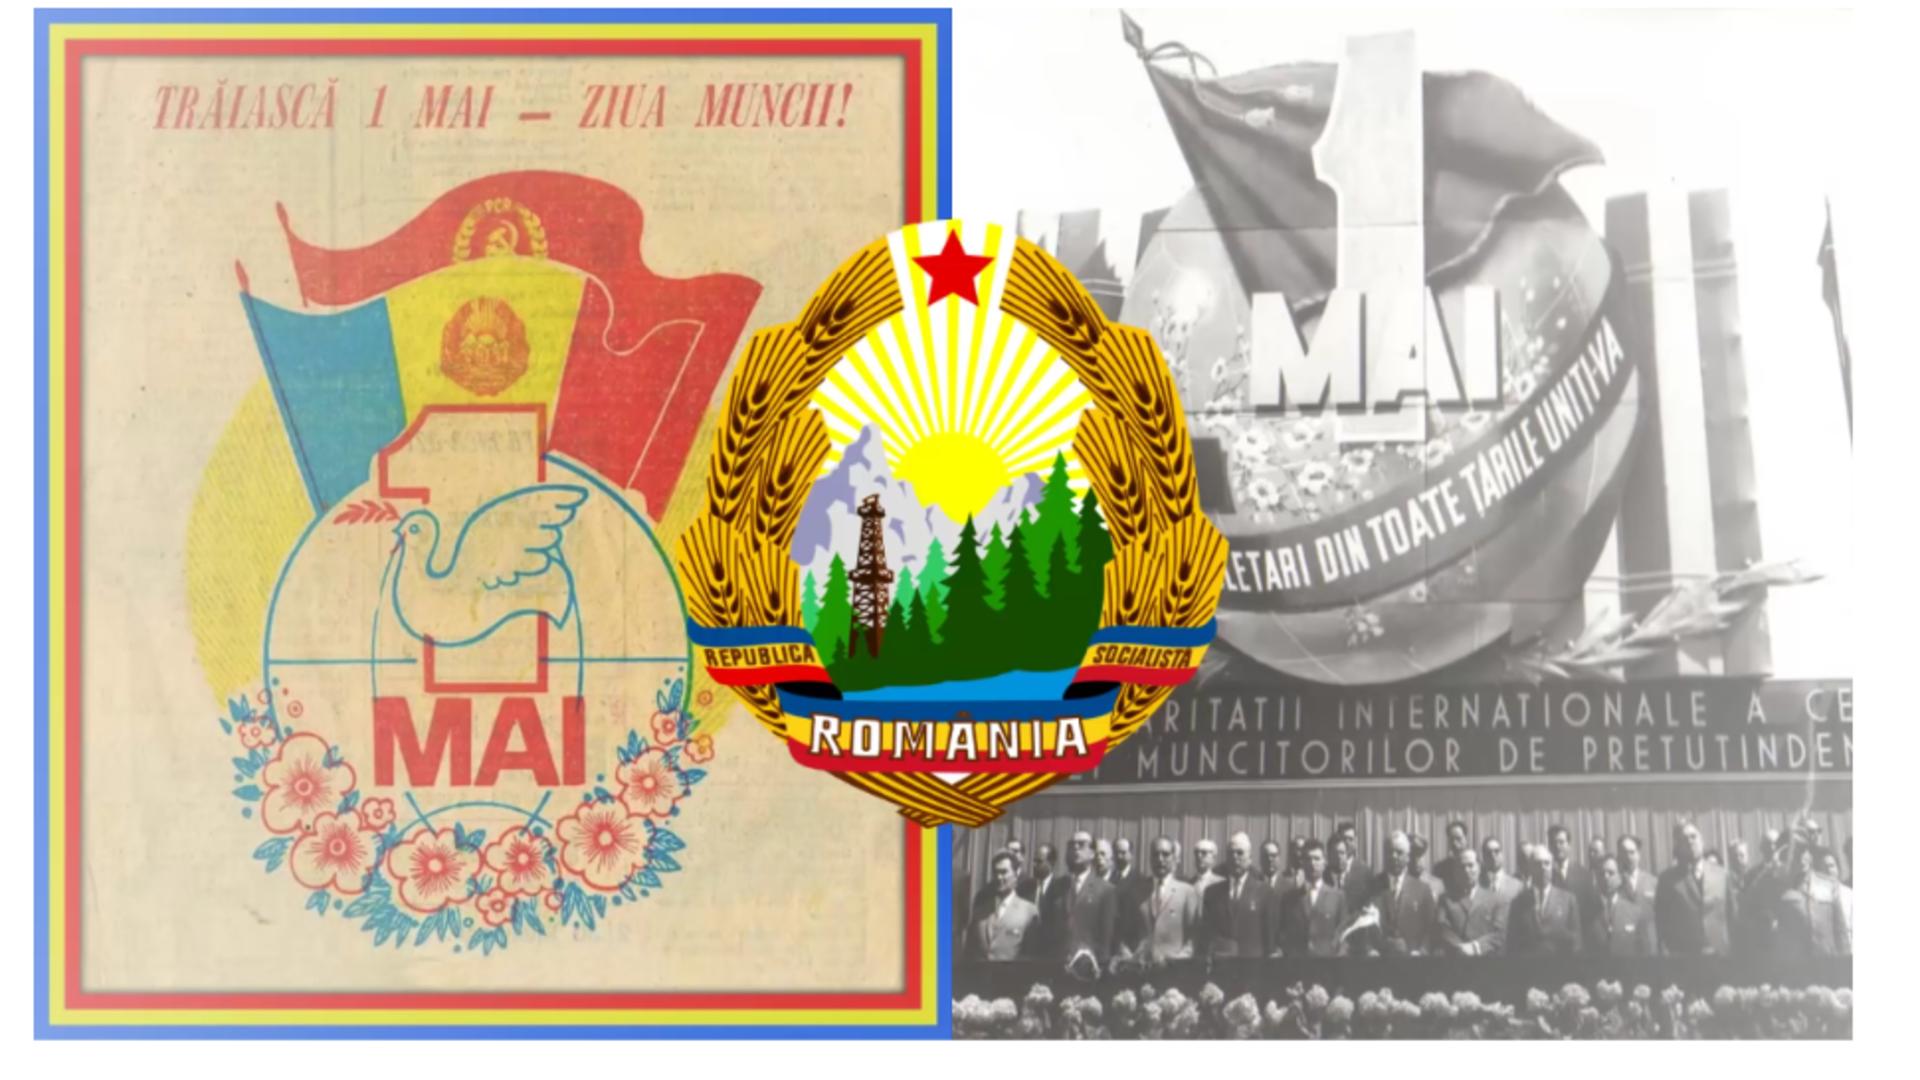 1 Mai muncitoresc.​ Cum erau românii scoși la parade grandioase pe vremea comunismului și ce melodii ascultau cu ocazia Zilei Muncii